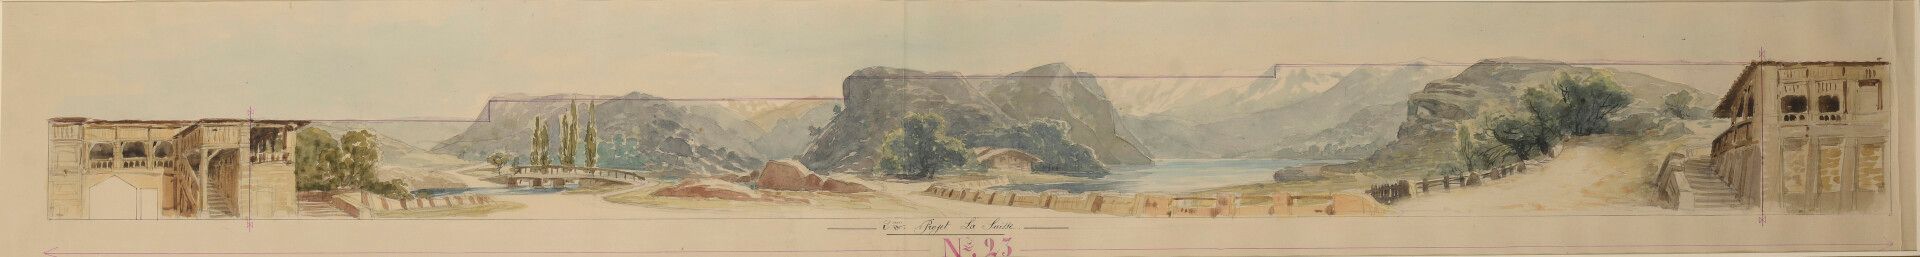 Amable PETIT (1846-1914) 在阿莫尔-佩蒂特（1846-1914）之后

第二个项目：瑞士

三幅全景水彩画，编号为8。

23和24。
&hellip;